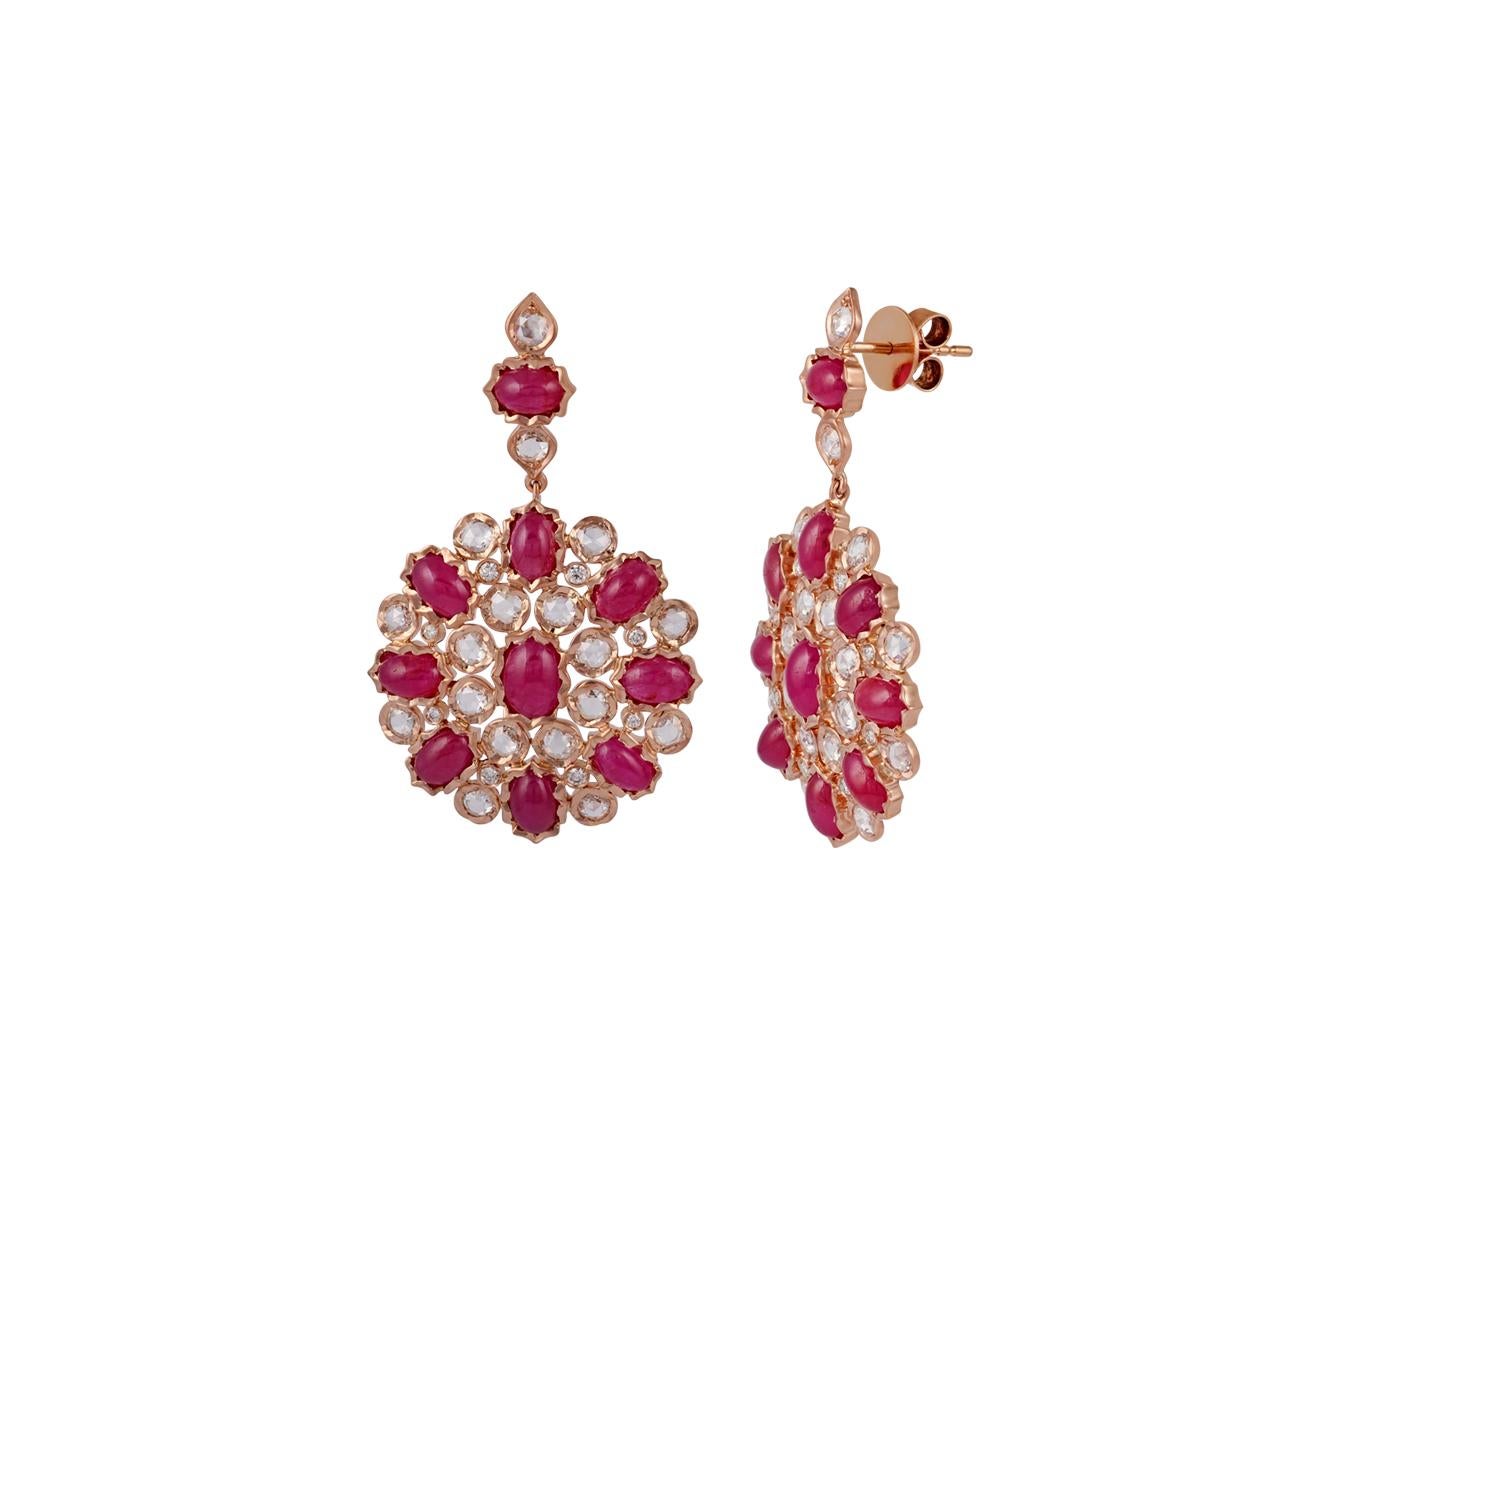 Classical Greek 14.04 Carat Burma Ruby Diamond Chandelier Earrings in 18k Rose Gold For Sale